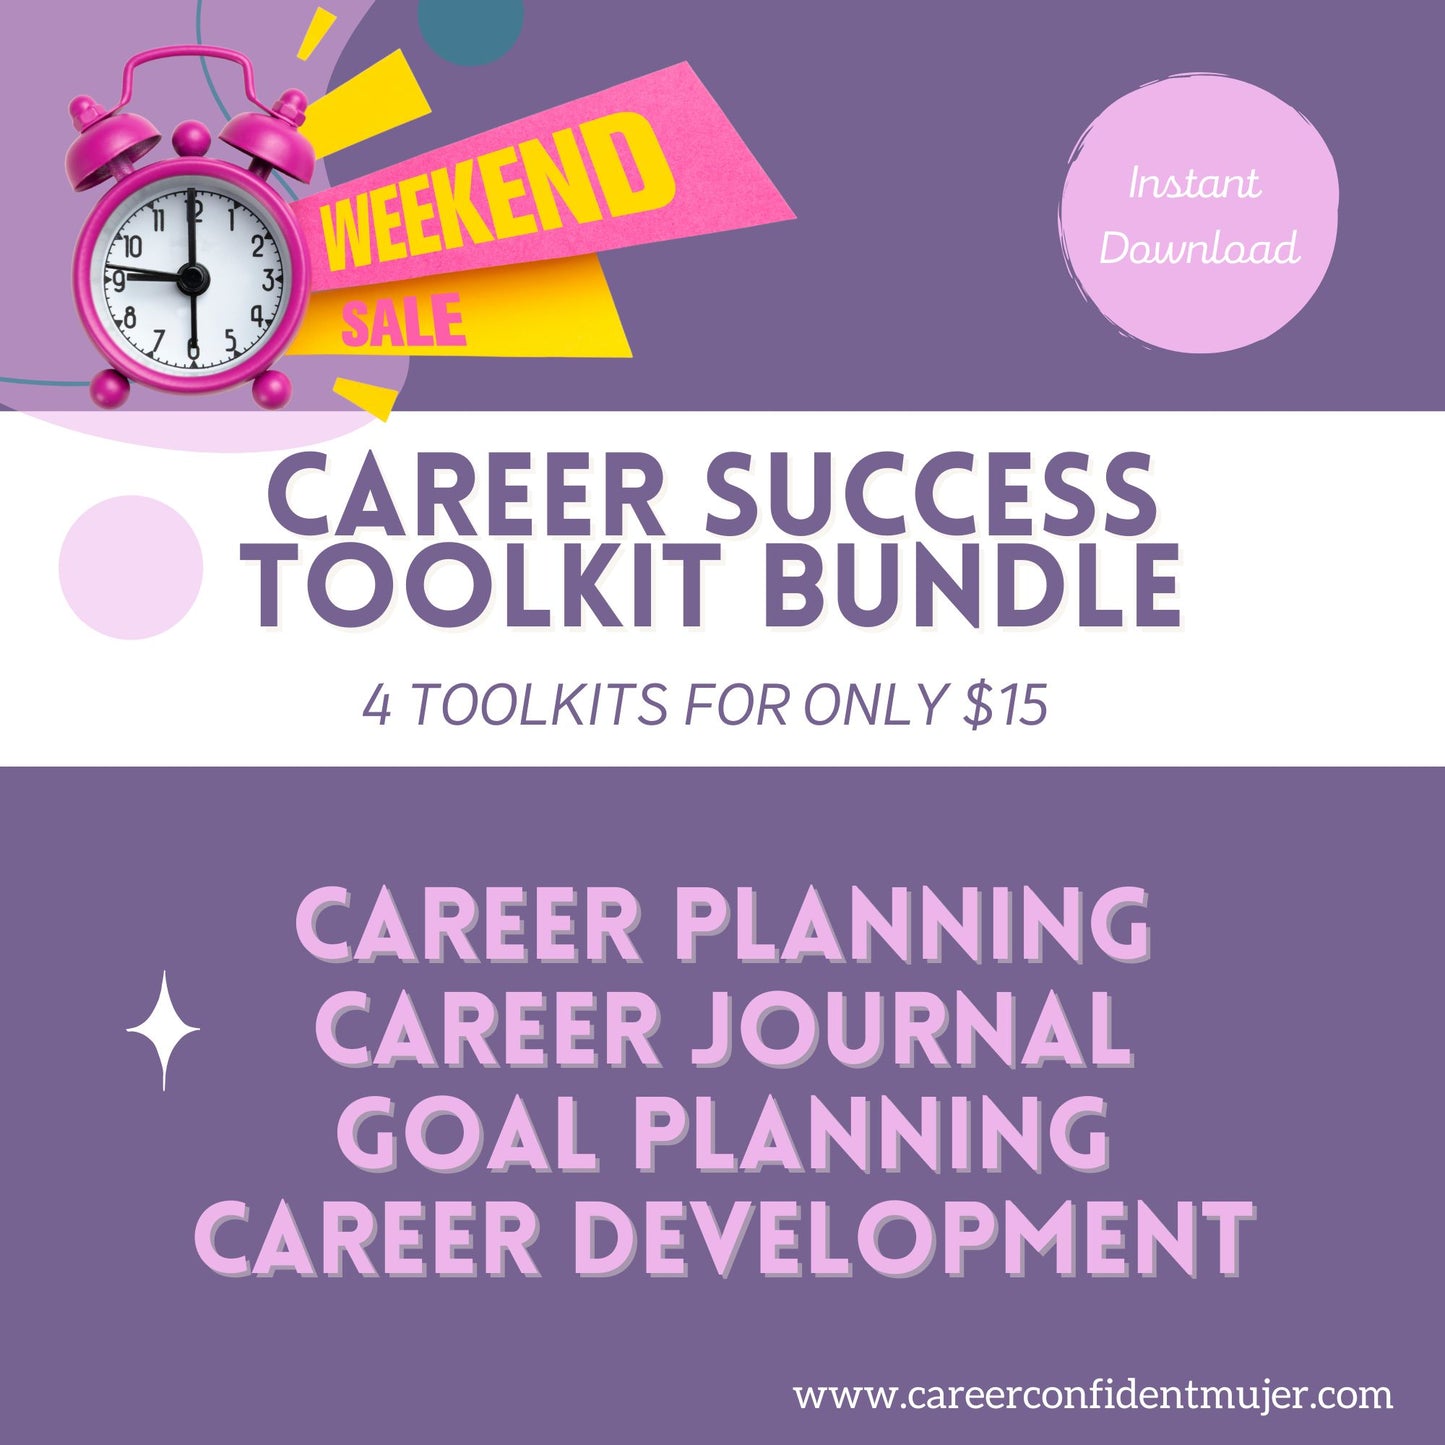 Career Worksheets; Career Success Bundle, Career Journal, Career Planning Tools 4 in 1 BUNDLE